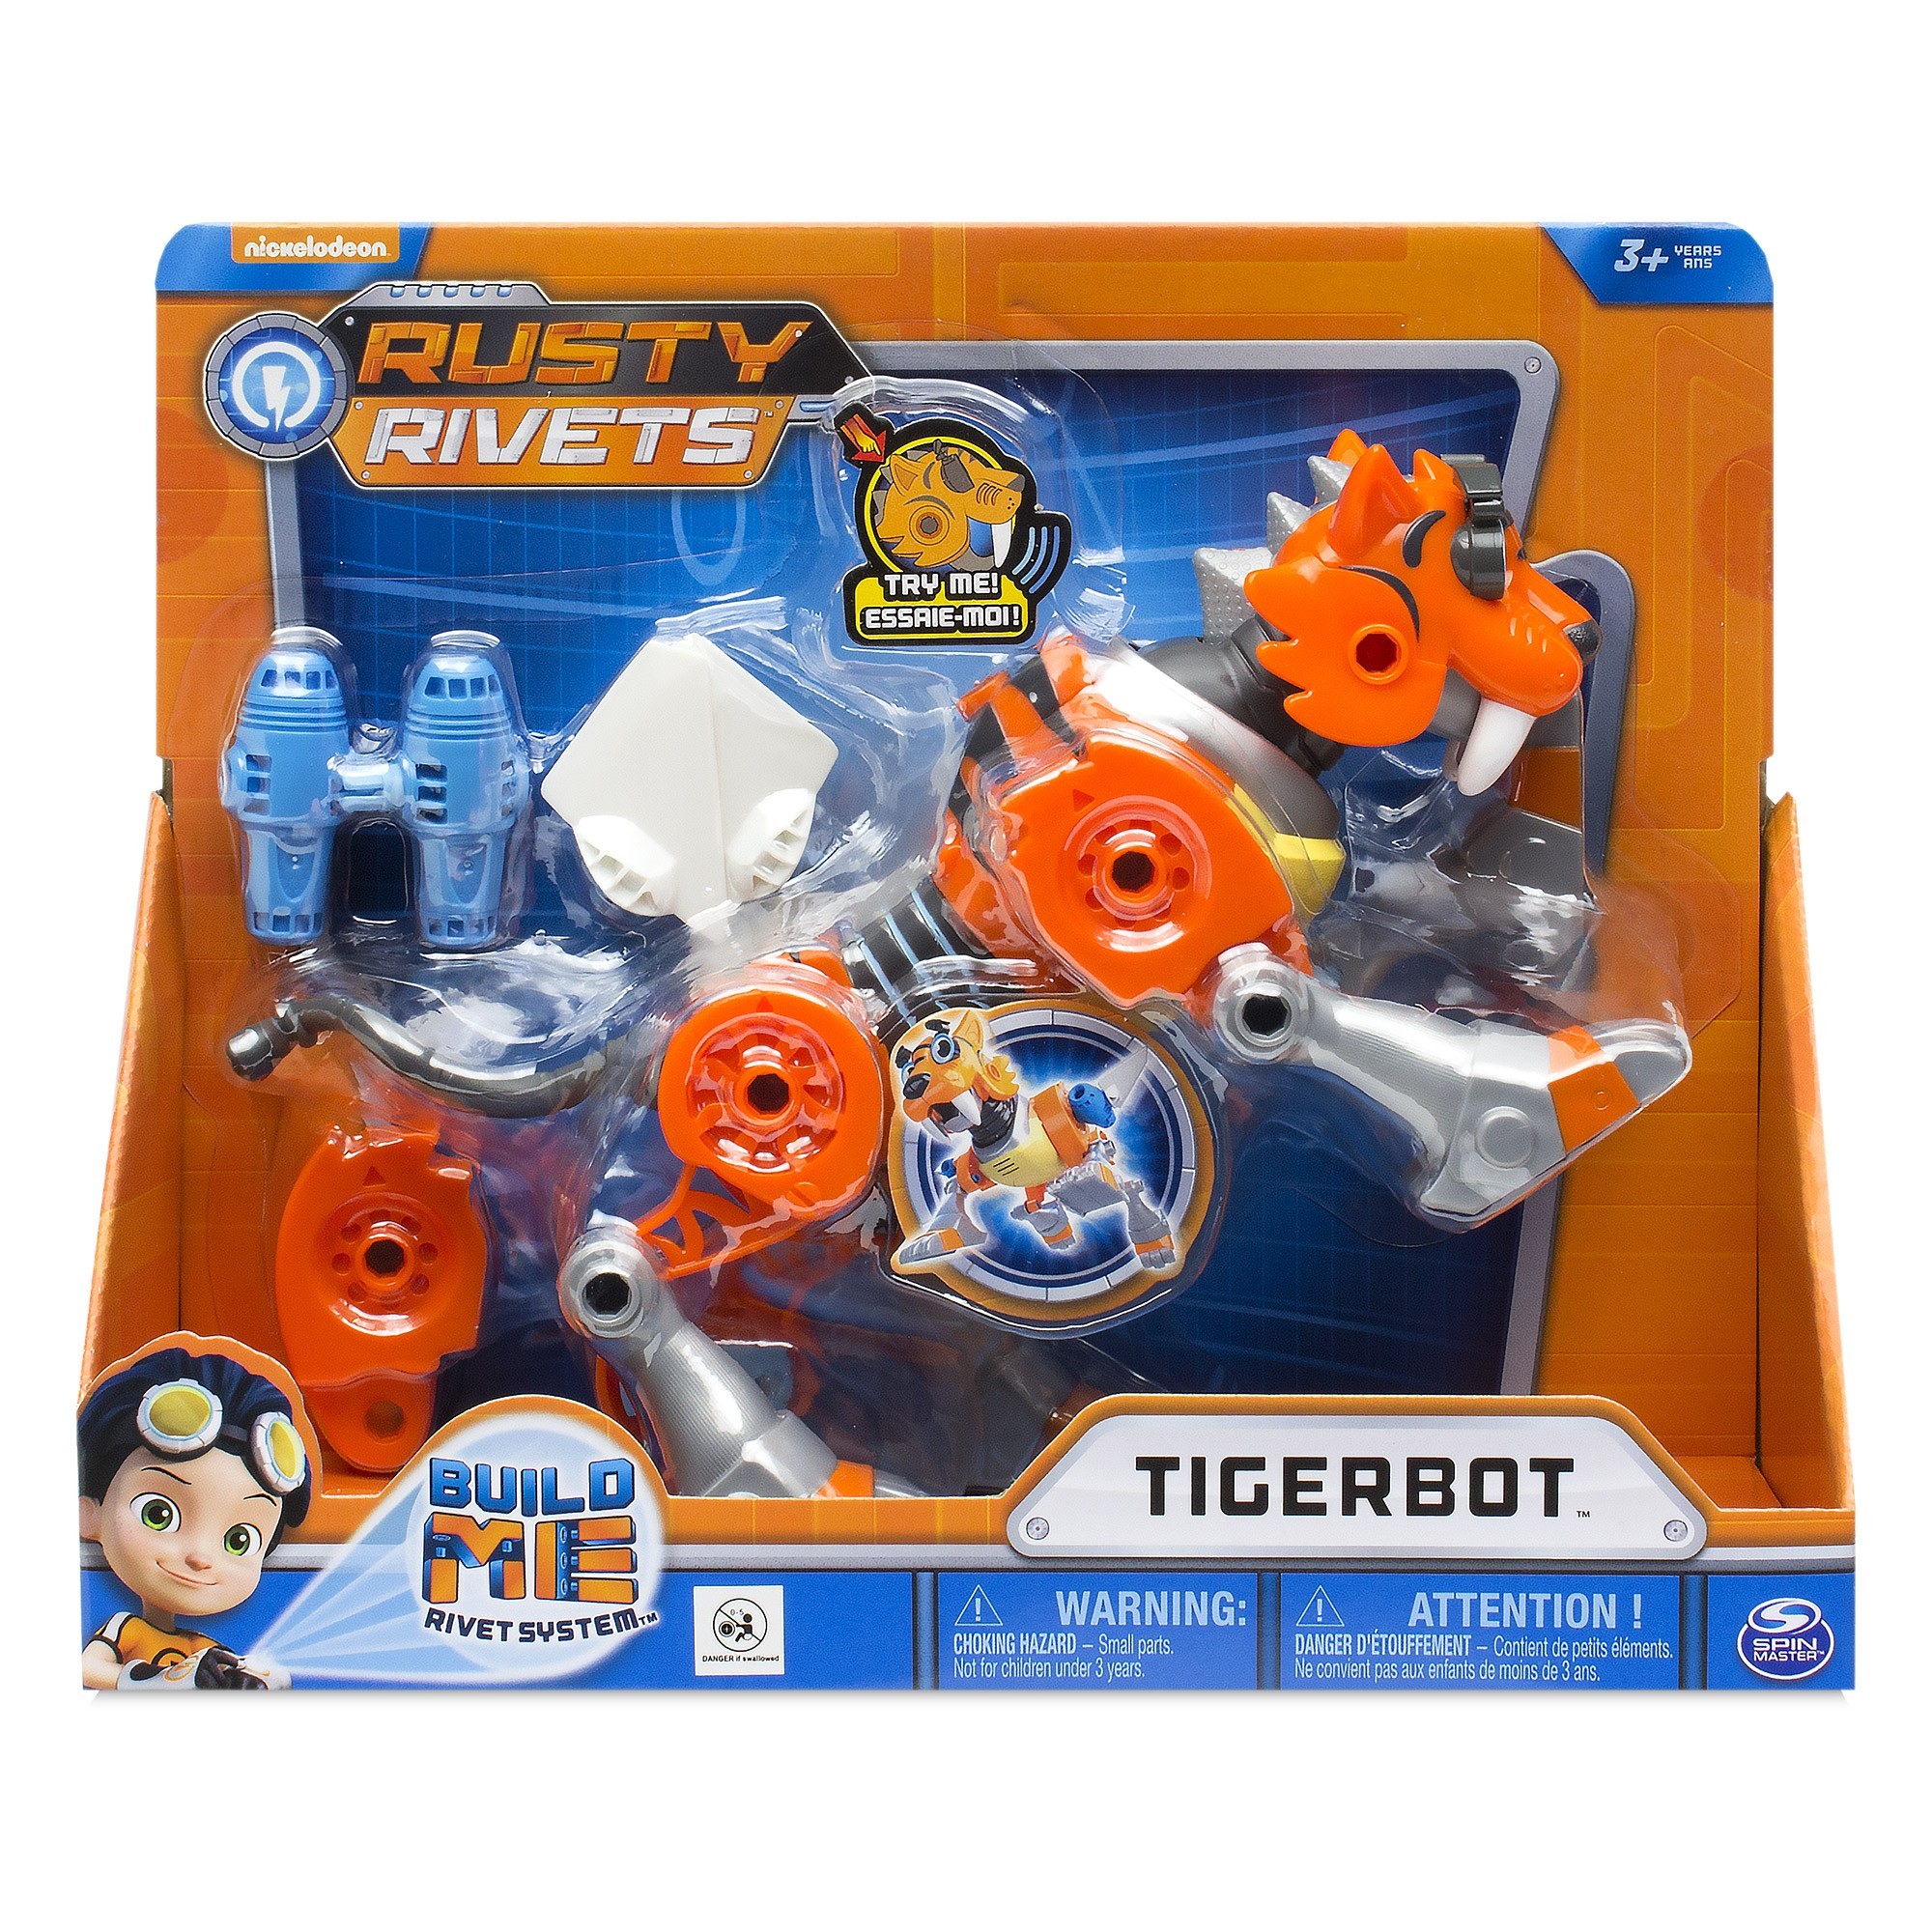 Rusty Rivets - Tigerbot Building Set